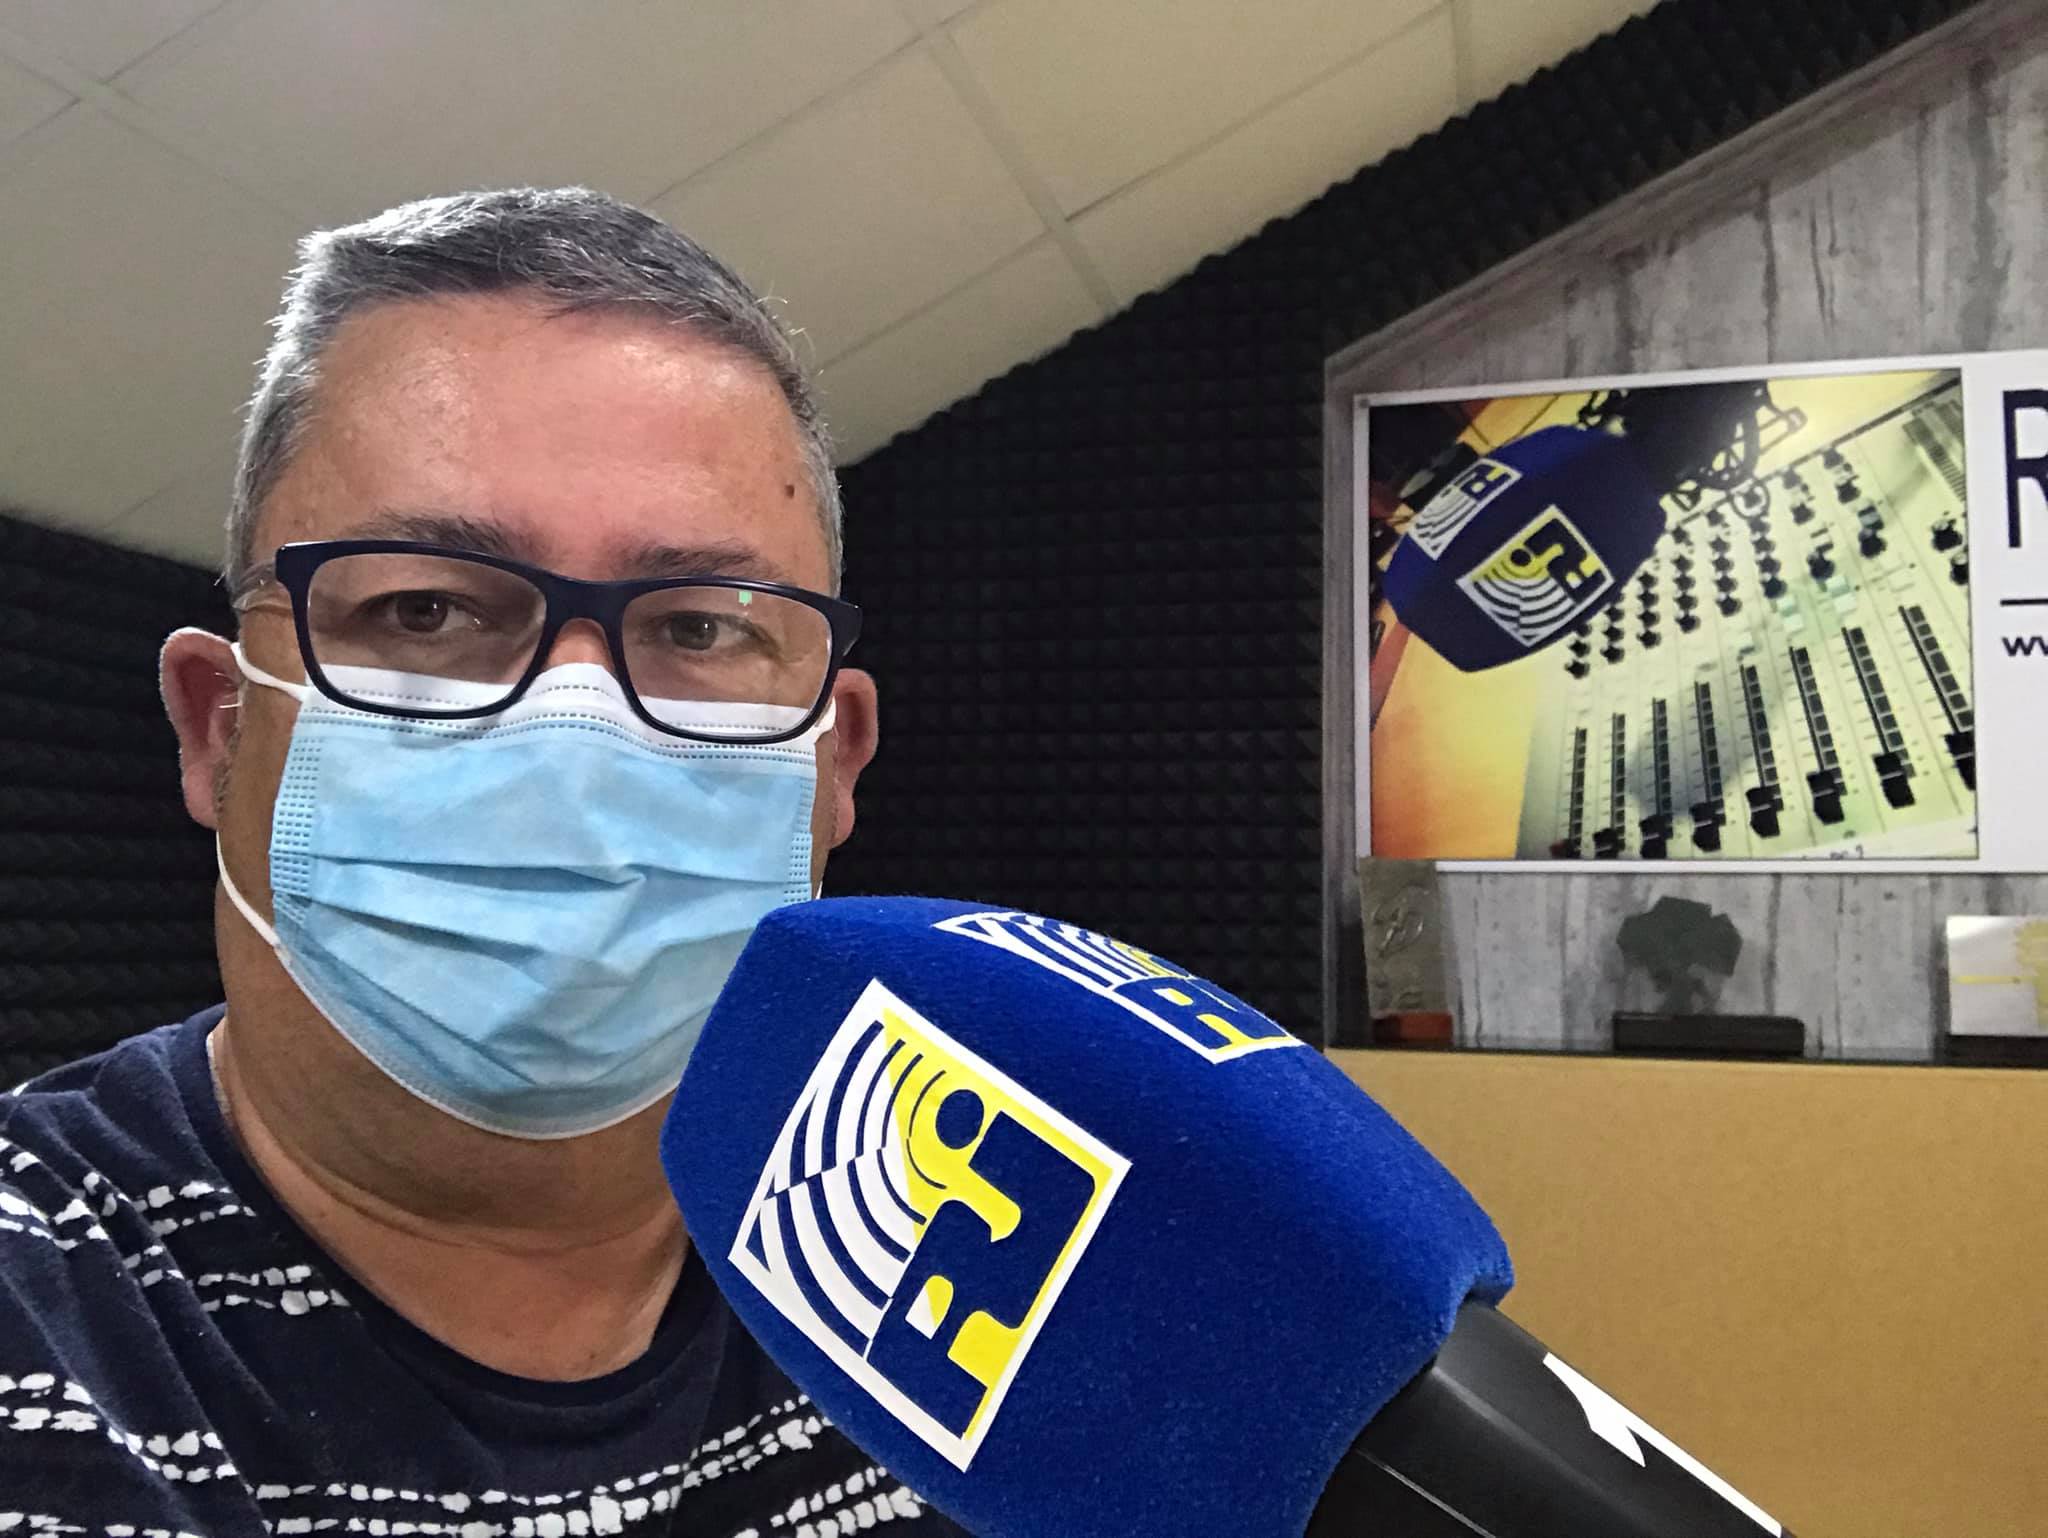 Noticias recién salidas del horno en las mañanas de Radio Isla Cristina